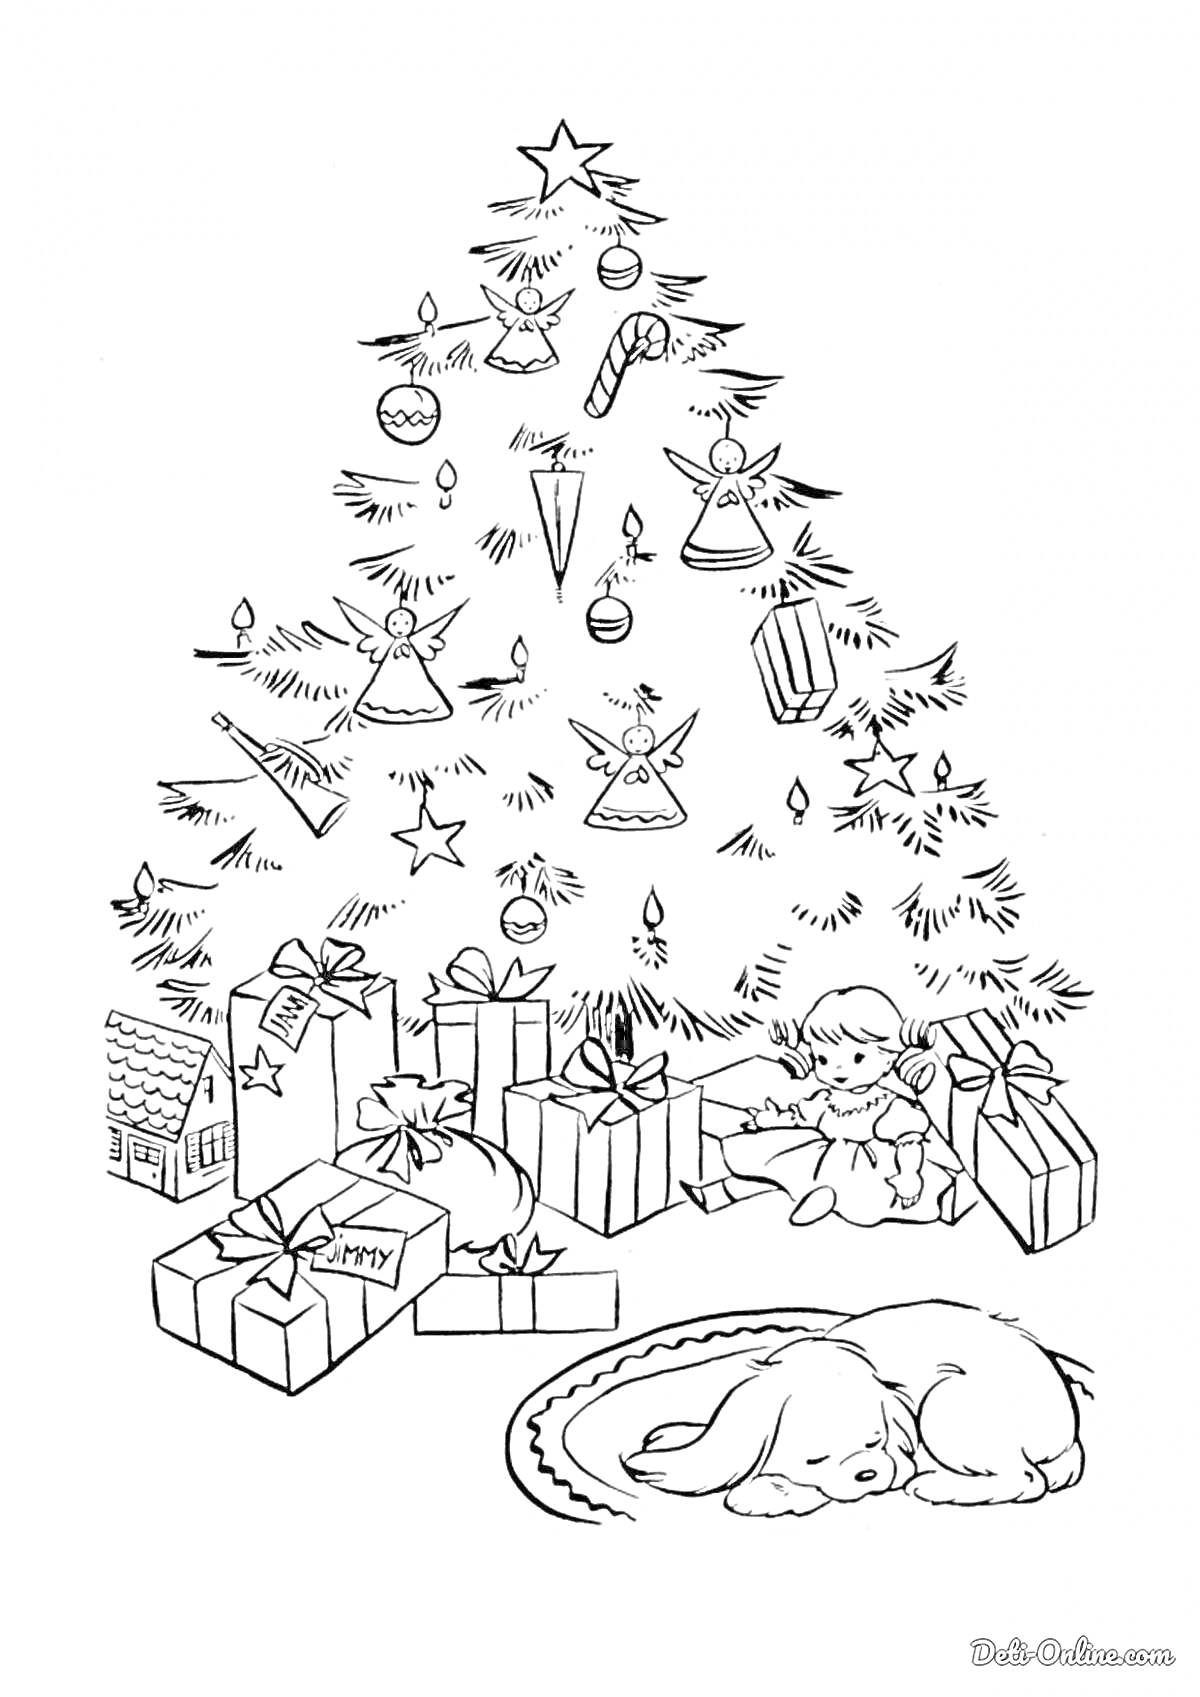 Раскраска рождественская елка с украшениями, подарками, девочкой и спящей собакой